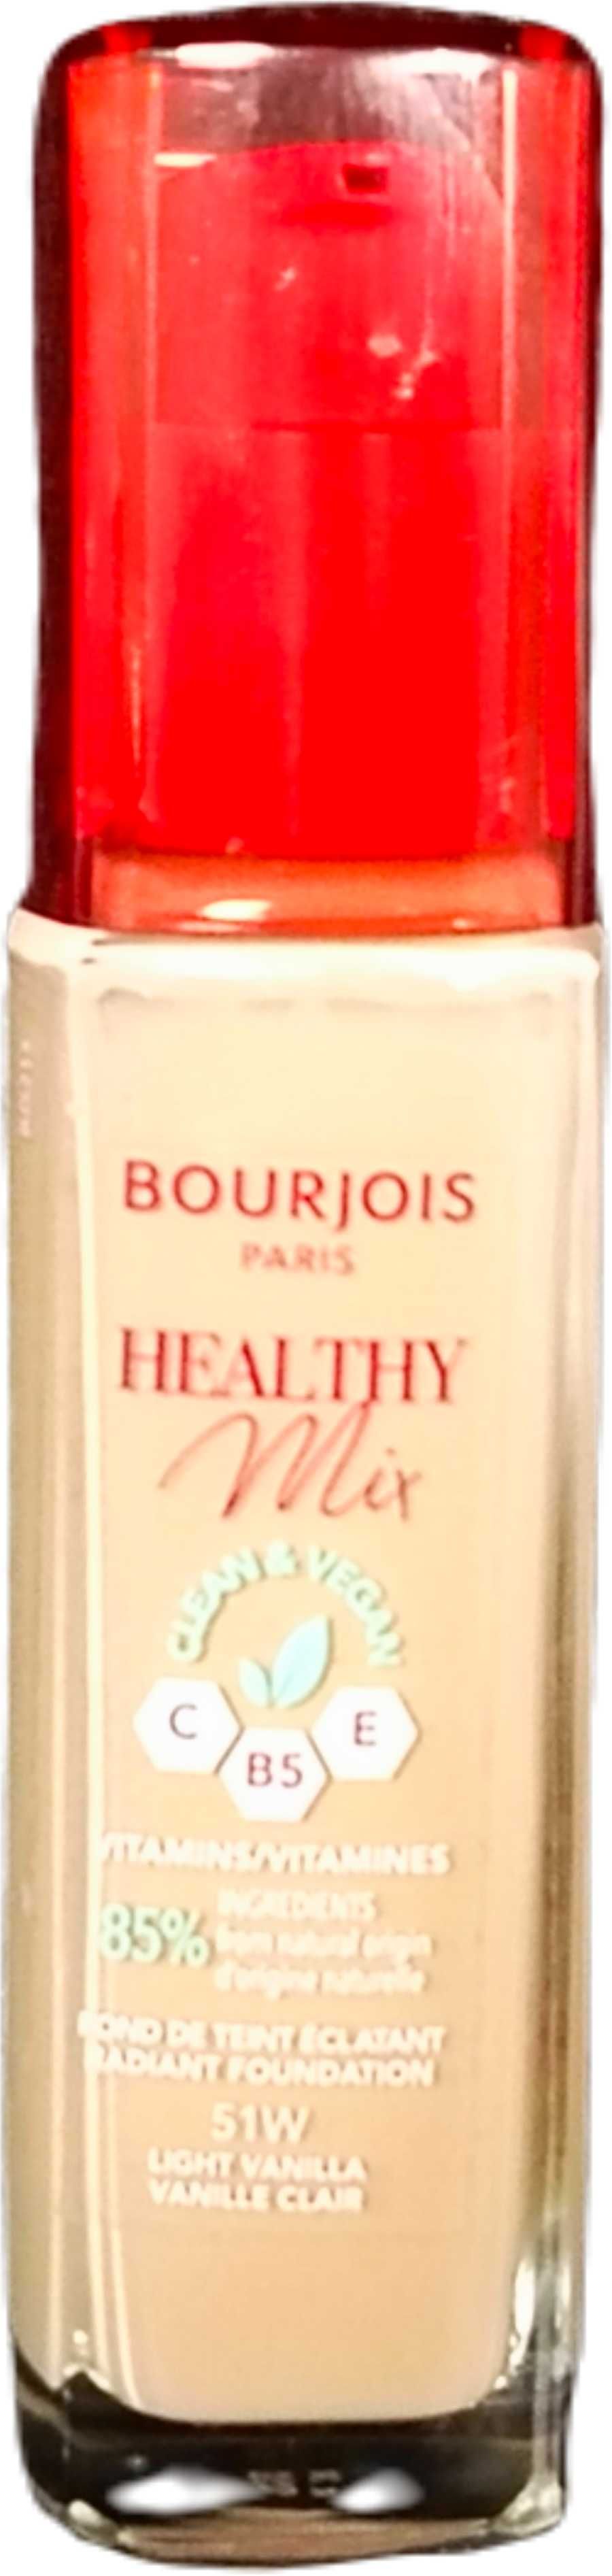 Podkład Bourjois Healthy Mix 51.2WWitamy serdecznie,